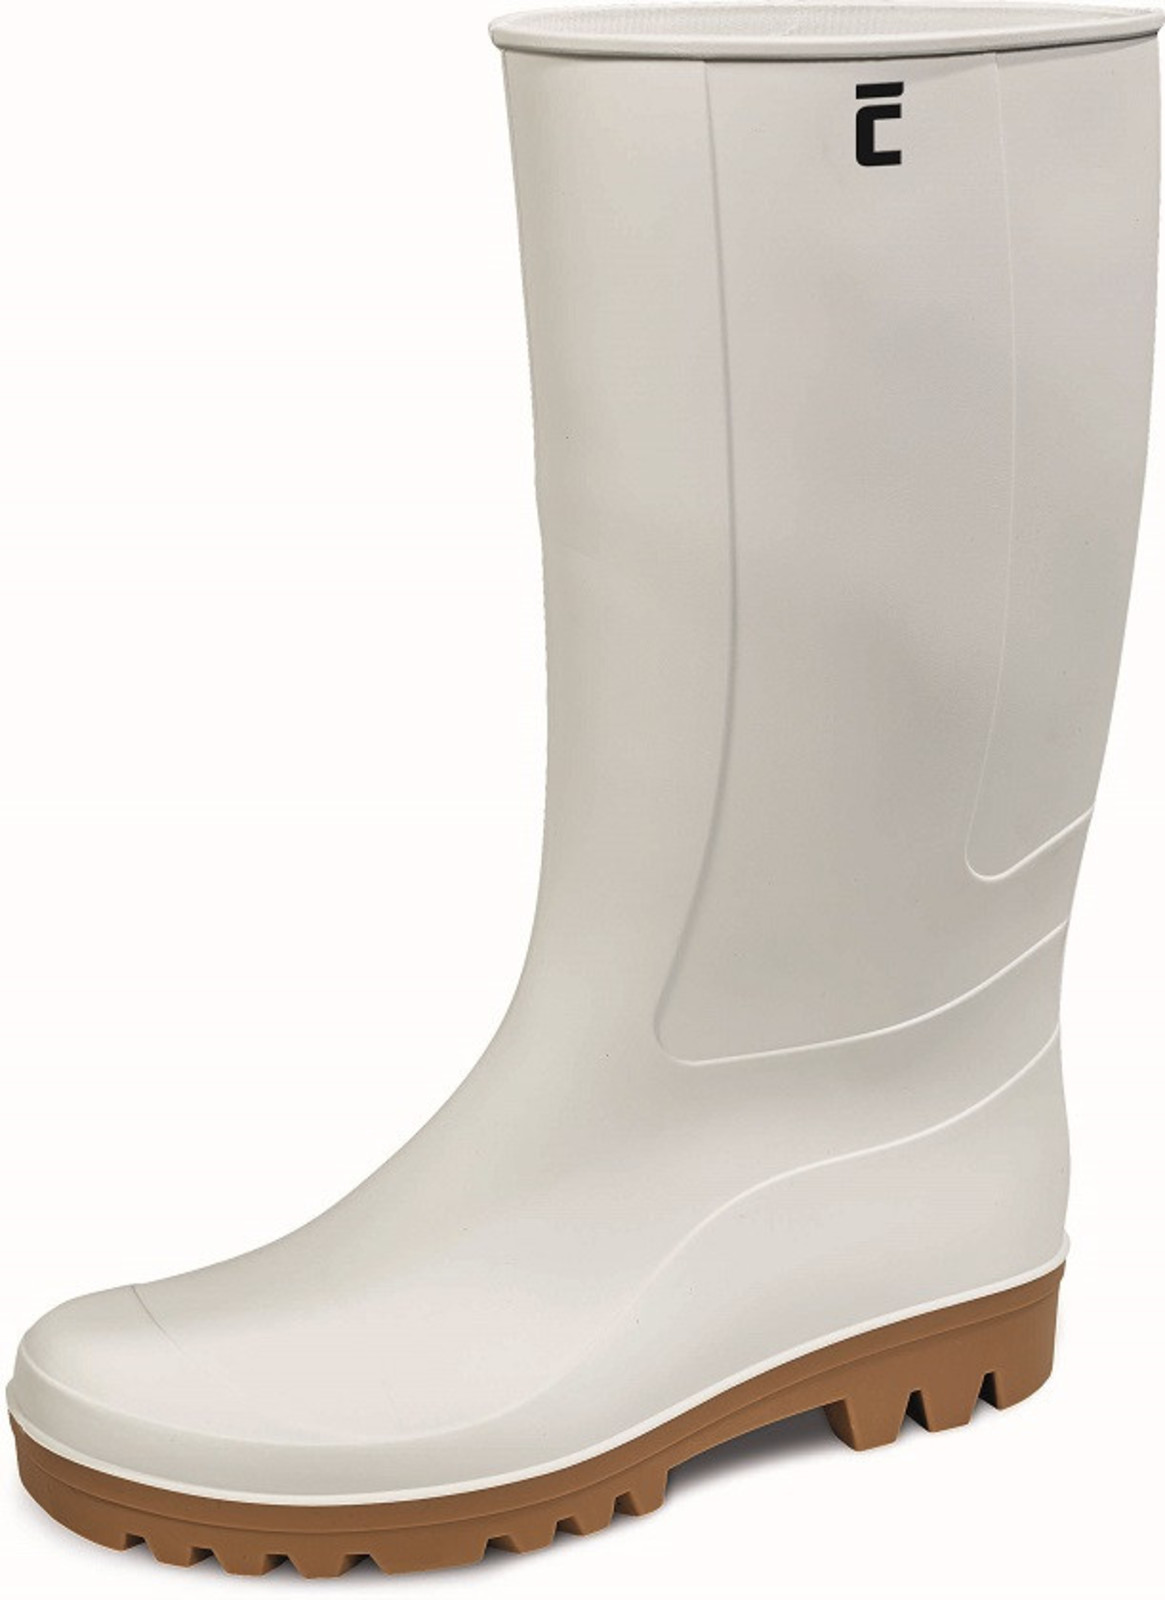 Gumáky Boots BC Food O4  - veľkosť: 46, farba: biela